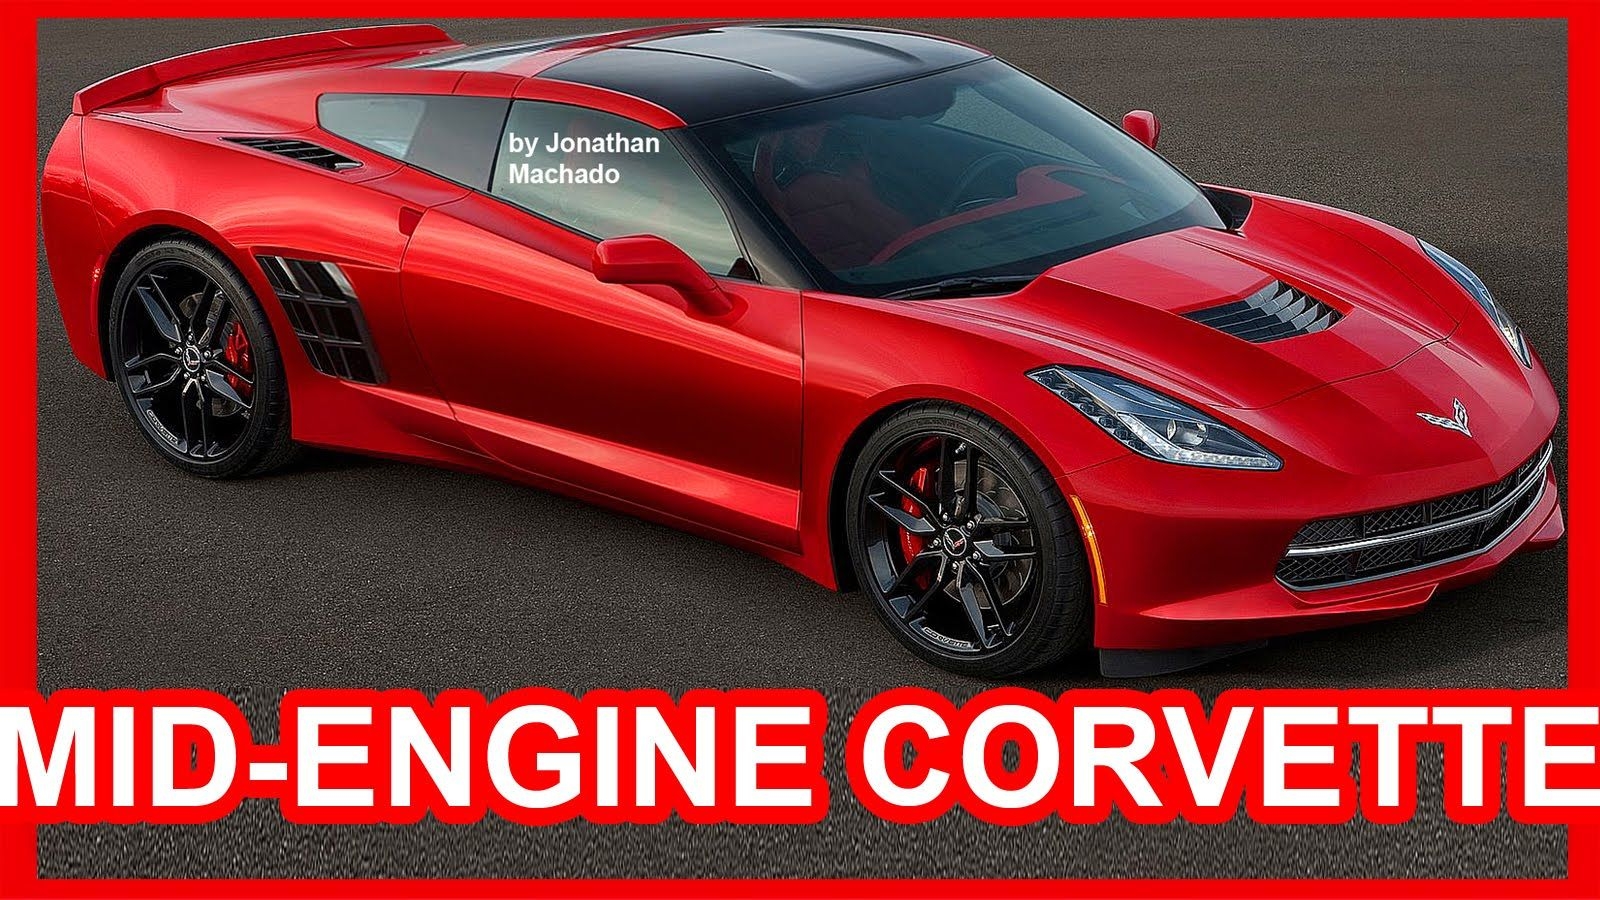 New Chevrolet Corvette Z06 Concept Car Re